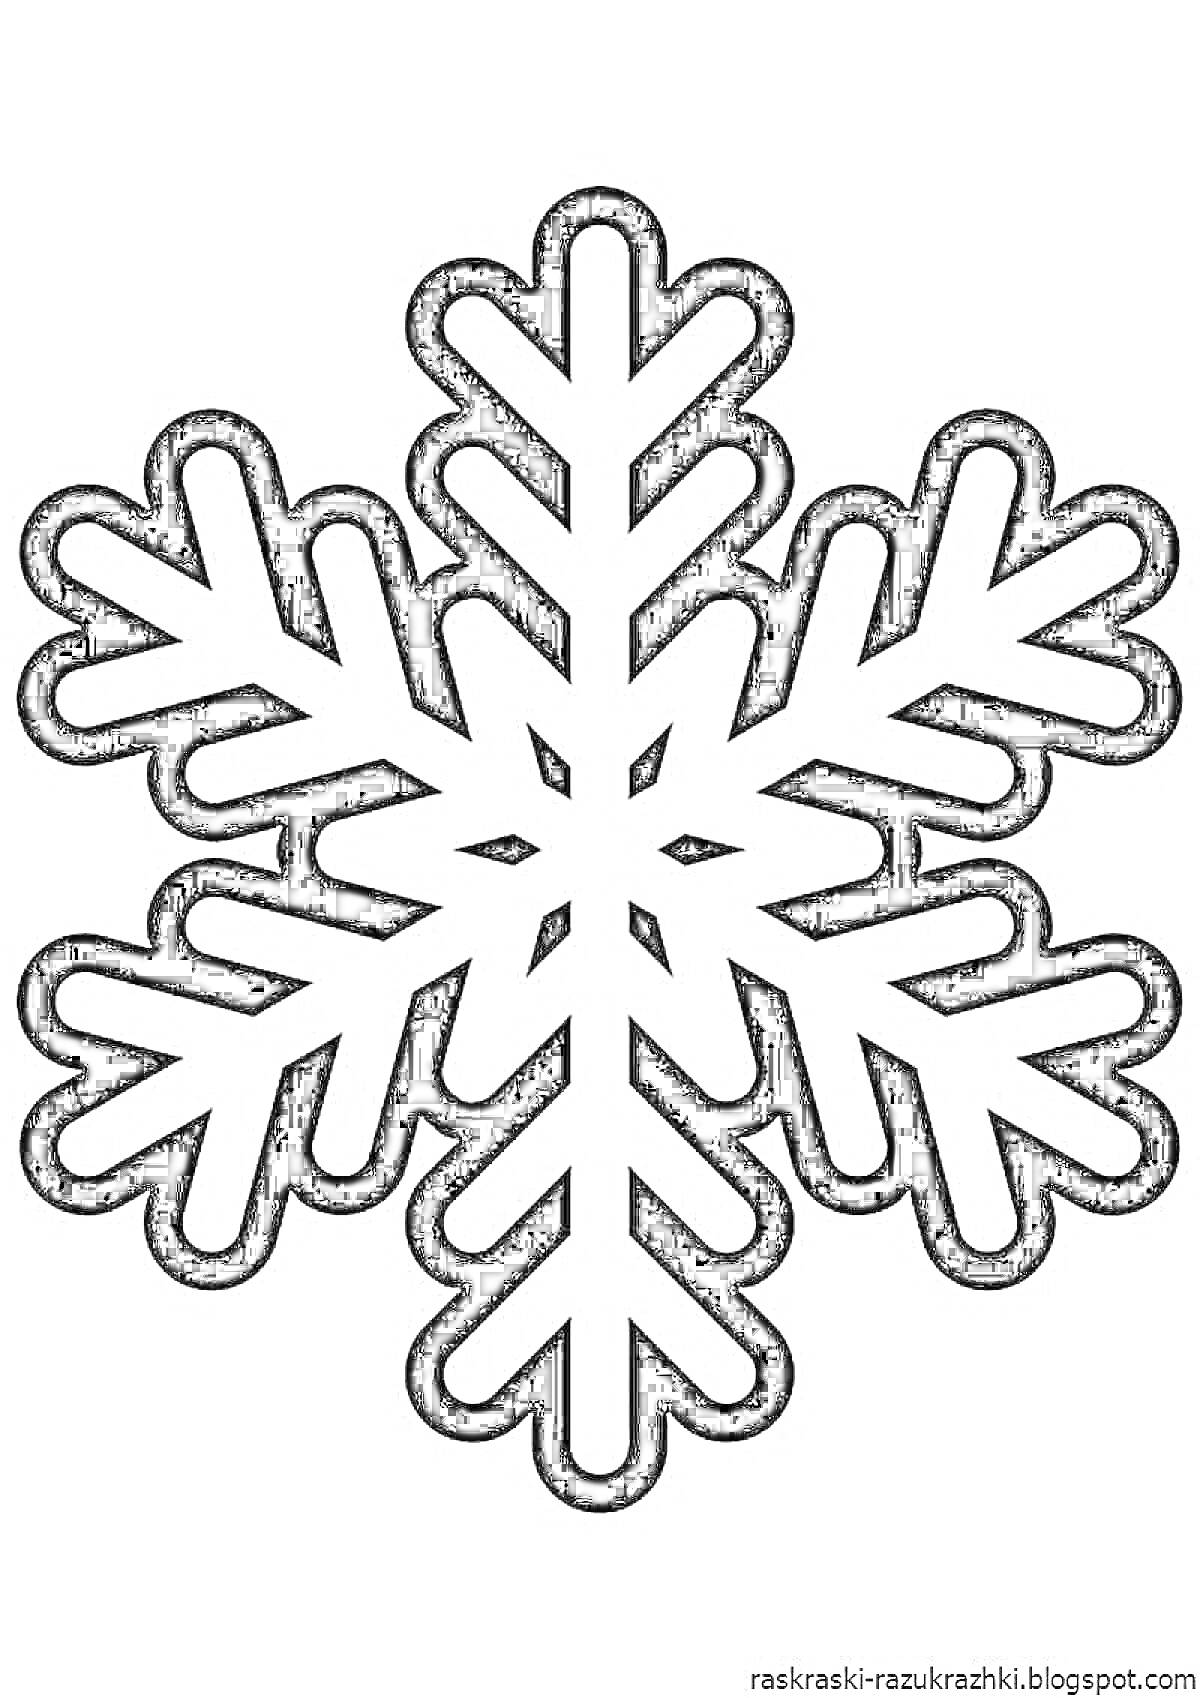 Раскраска Снежинка из шести лучей с узорами для раскрашивания